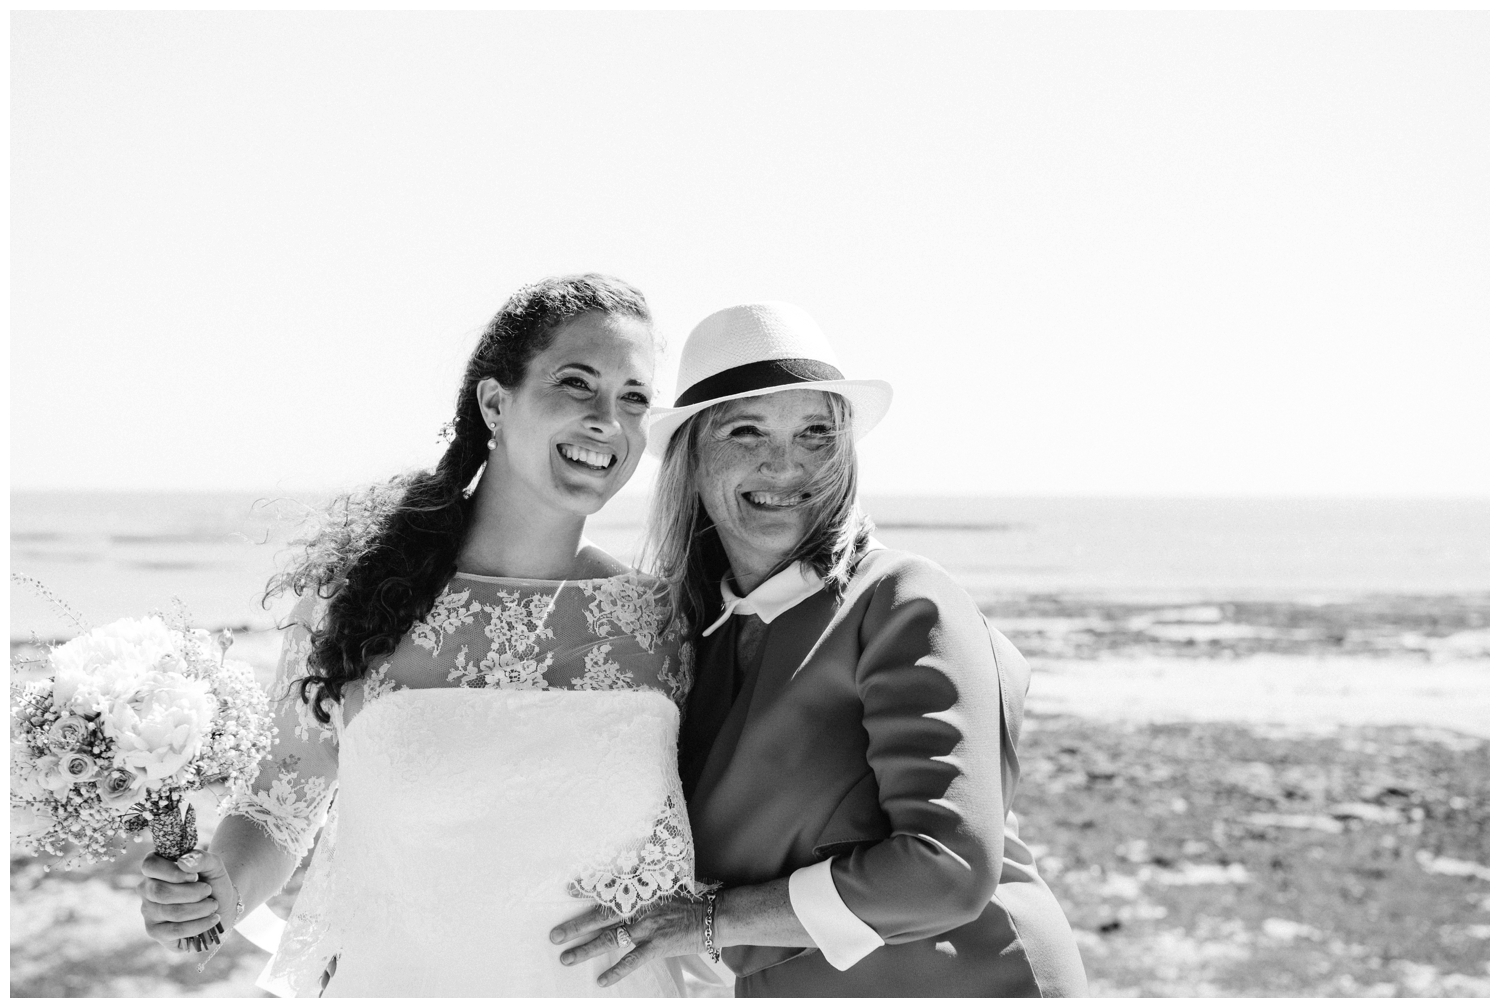 photographe-mariage-ile-noirmoutier-vendee-nantes-ceremonie-laique-ocean_0054